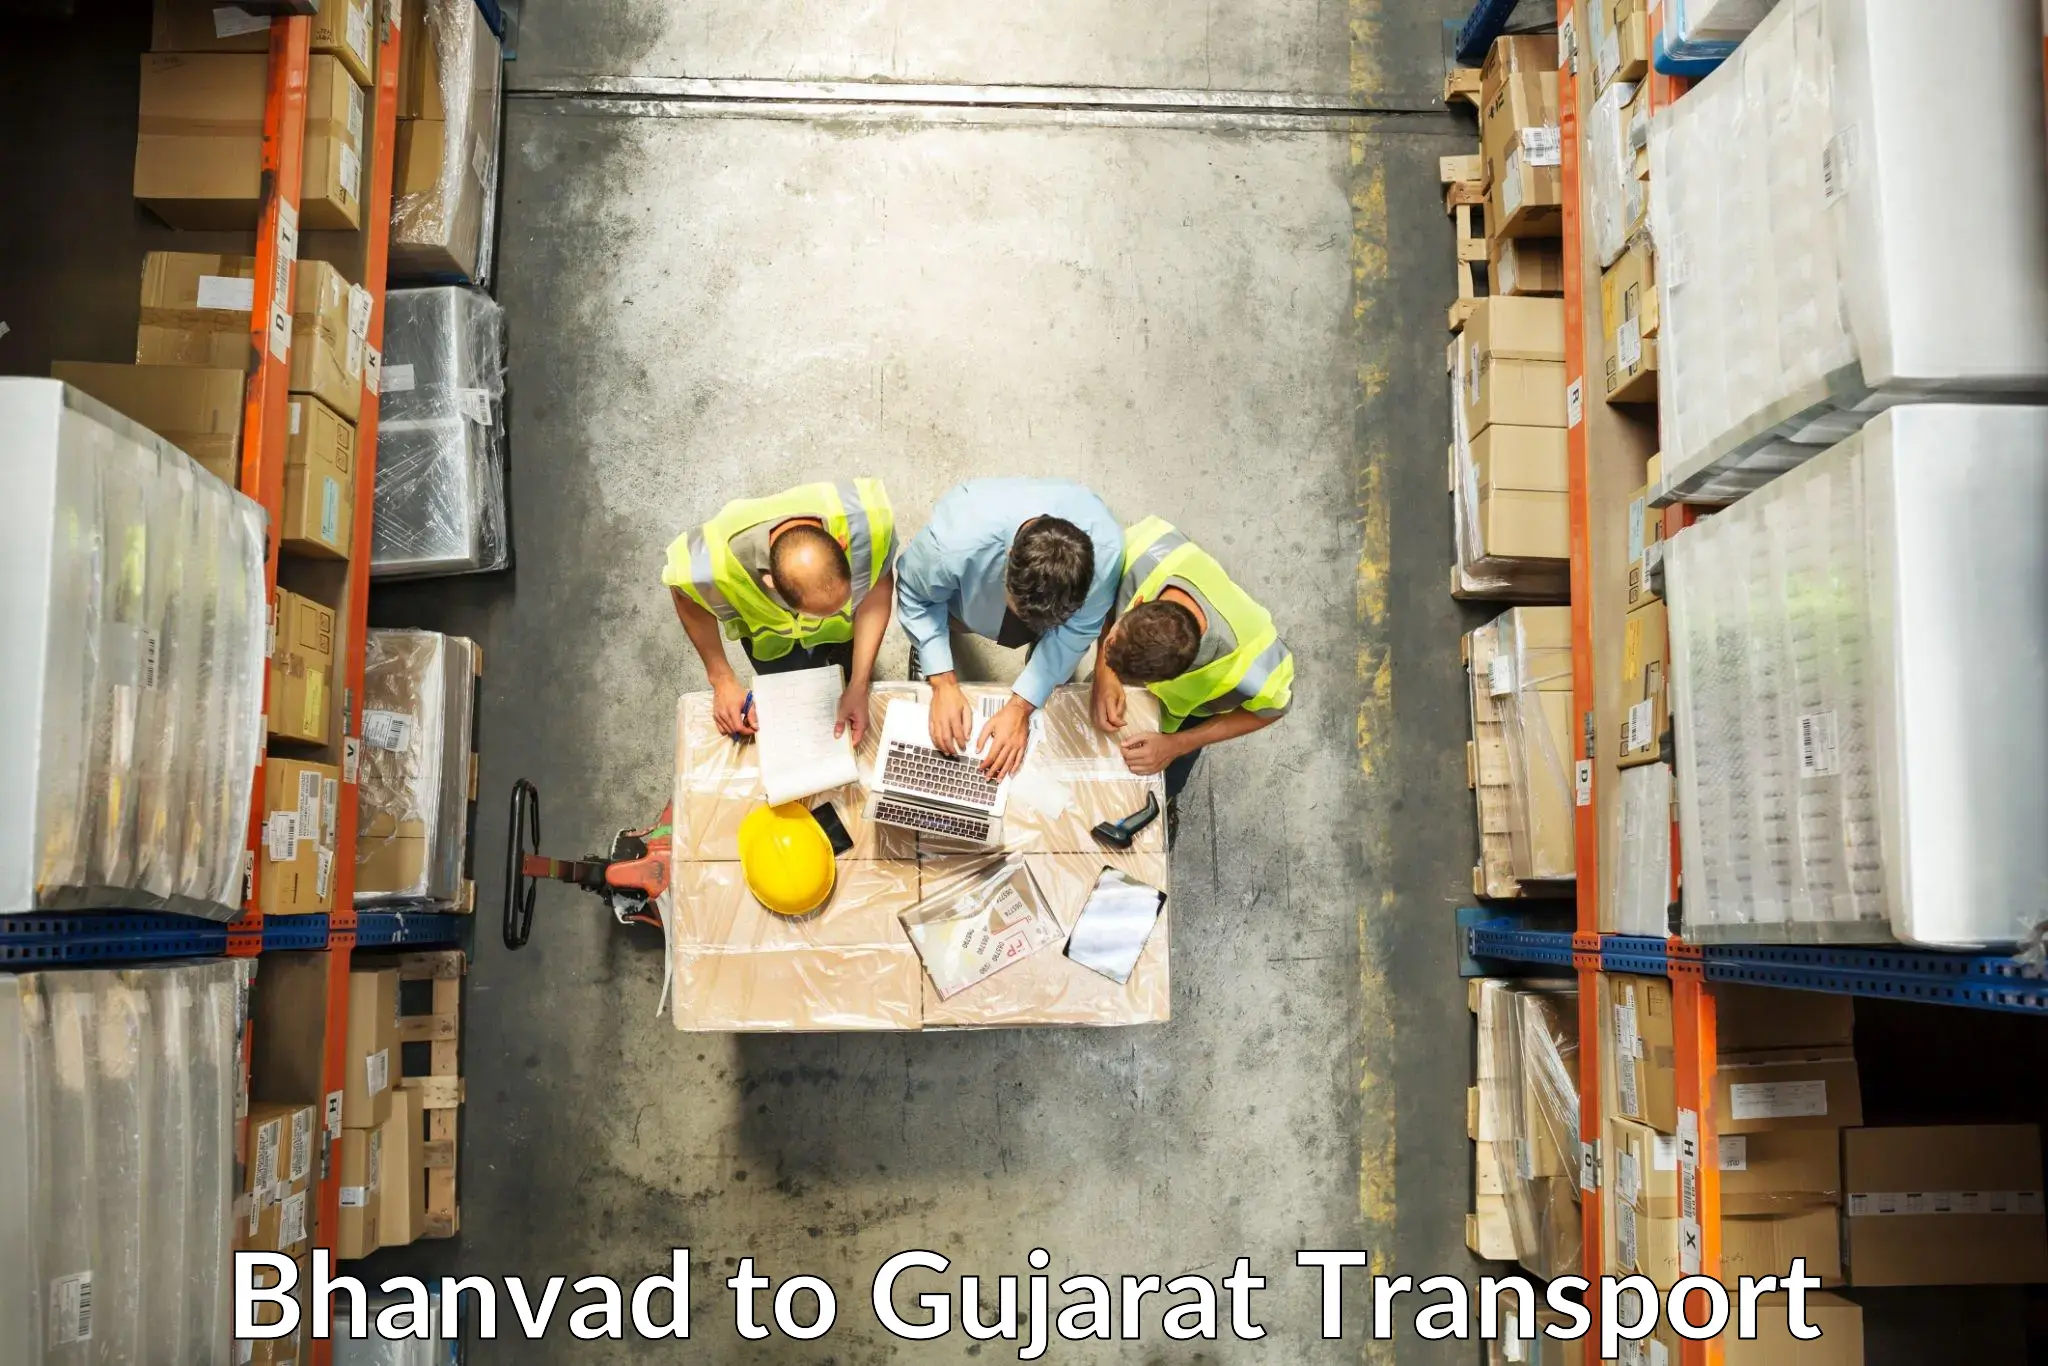 India truck logistics services Bhanvad to Narmada Gujarat